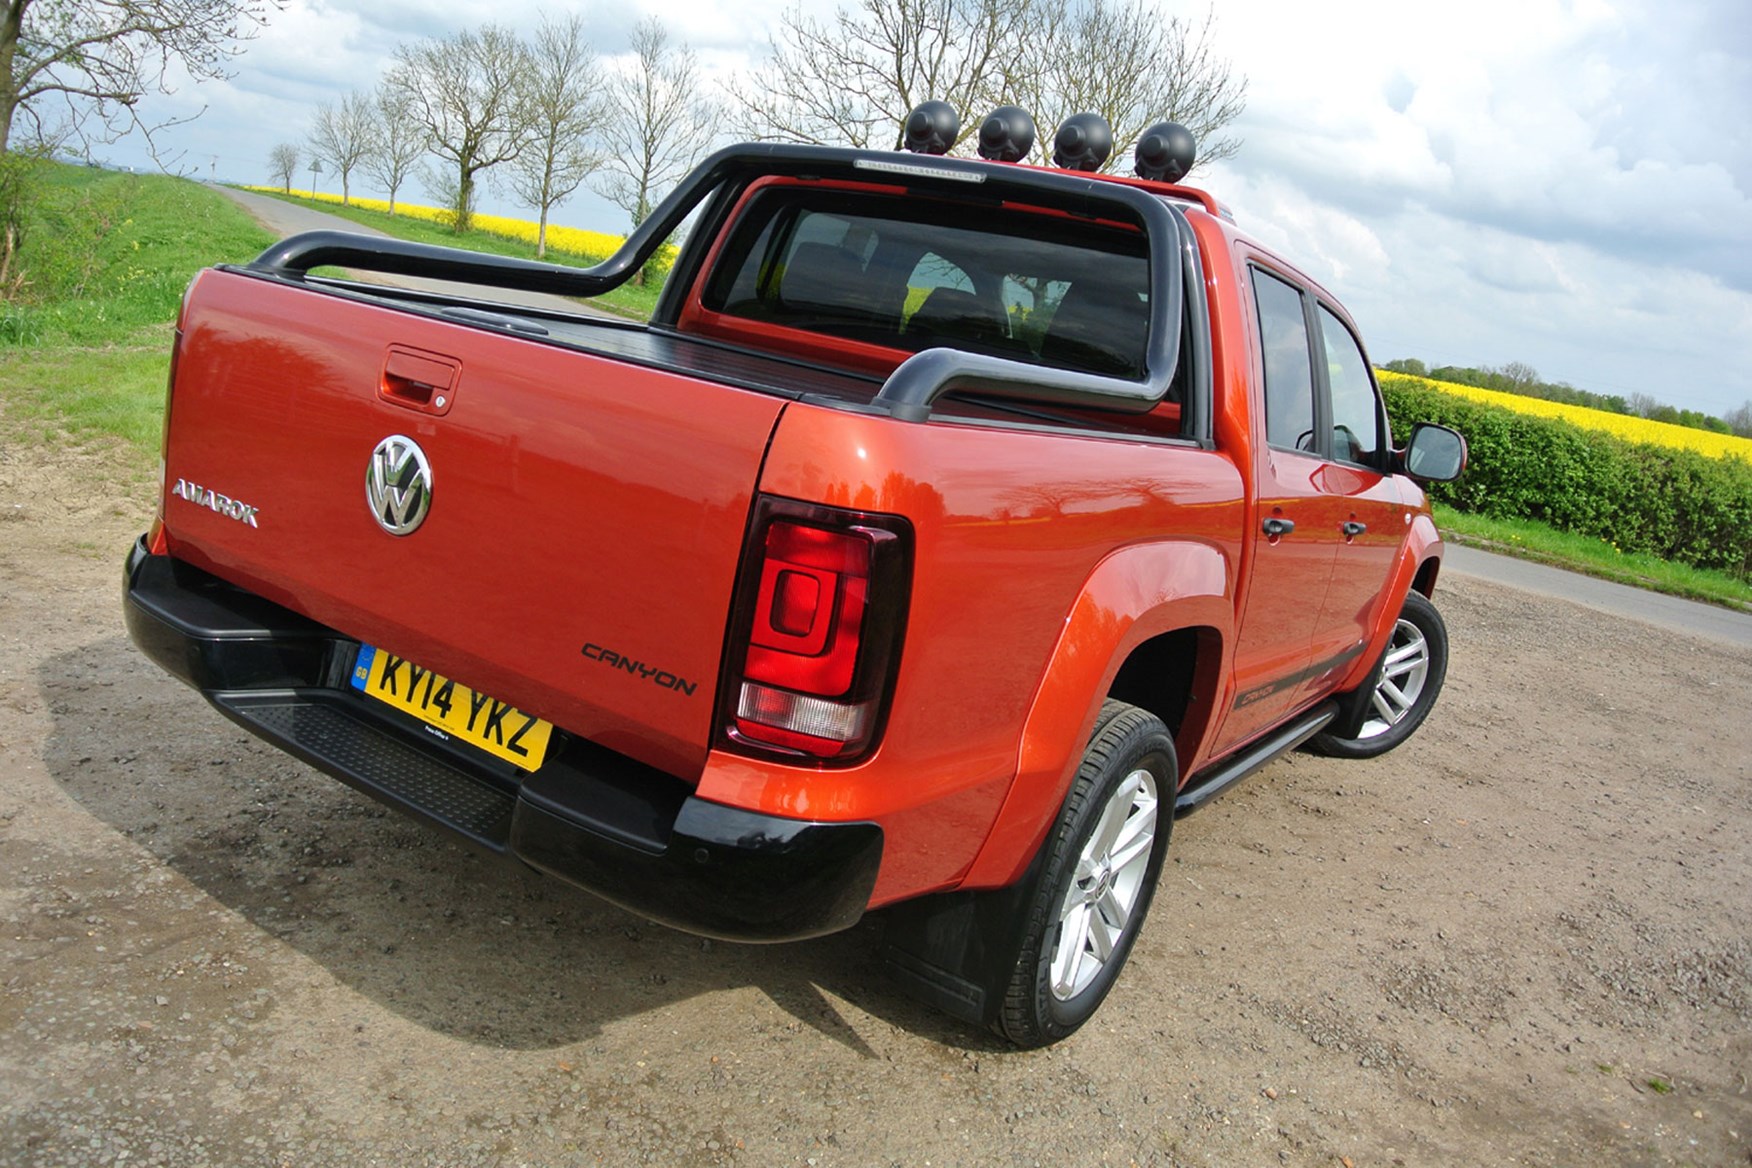 VW Amarok 2.0-litre Canyon 180hp review - rear view, orange